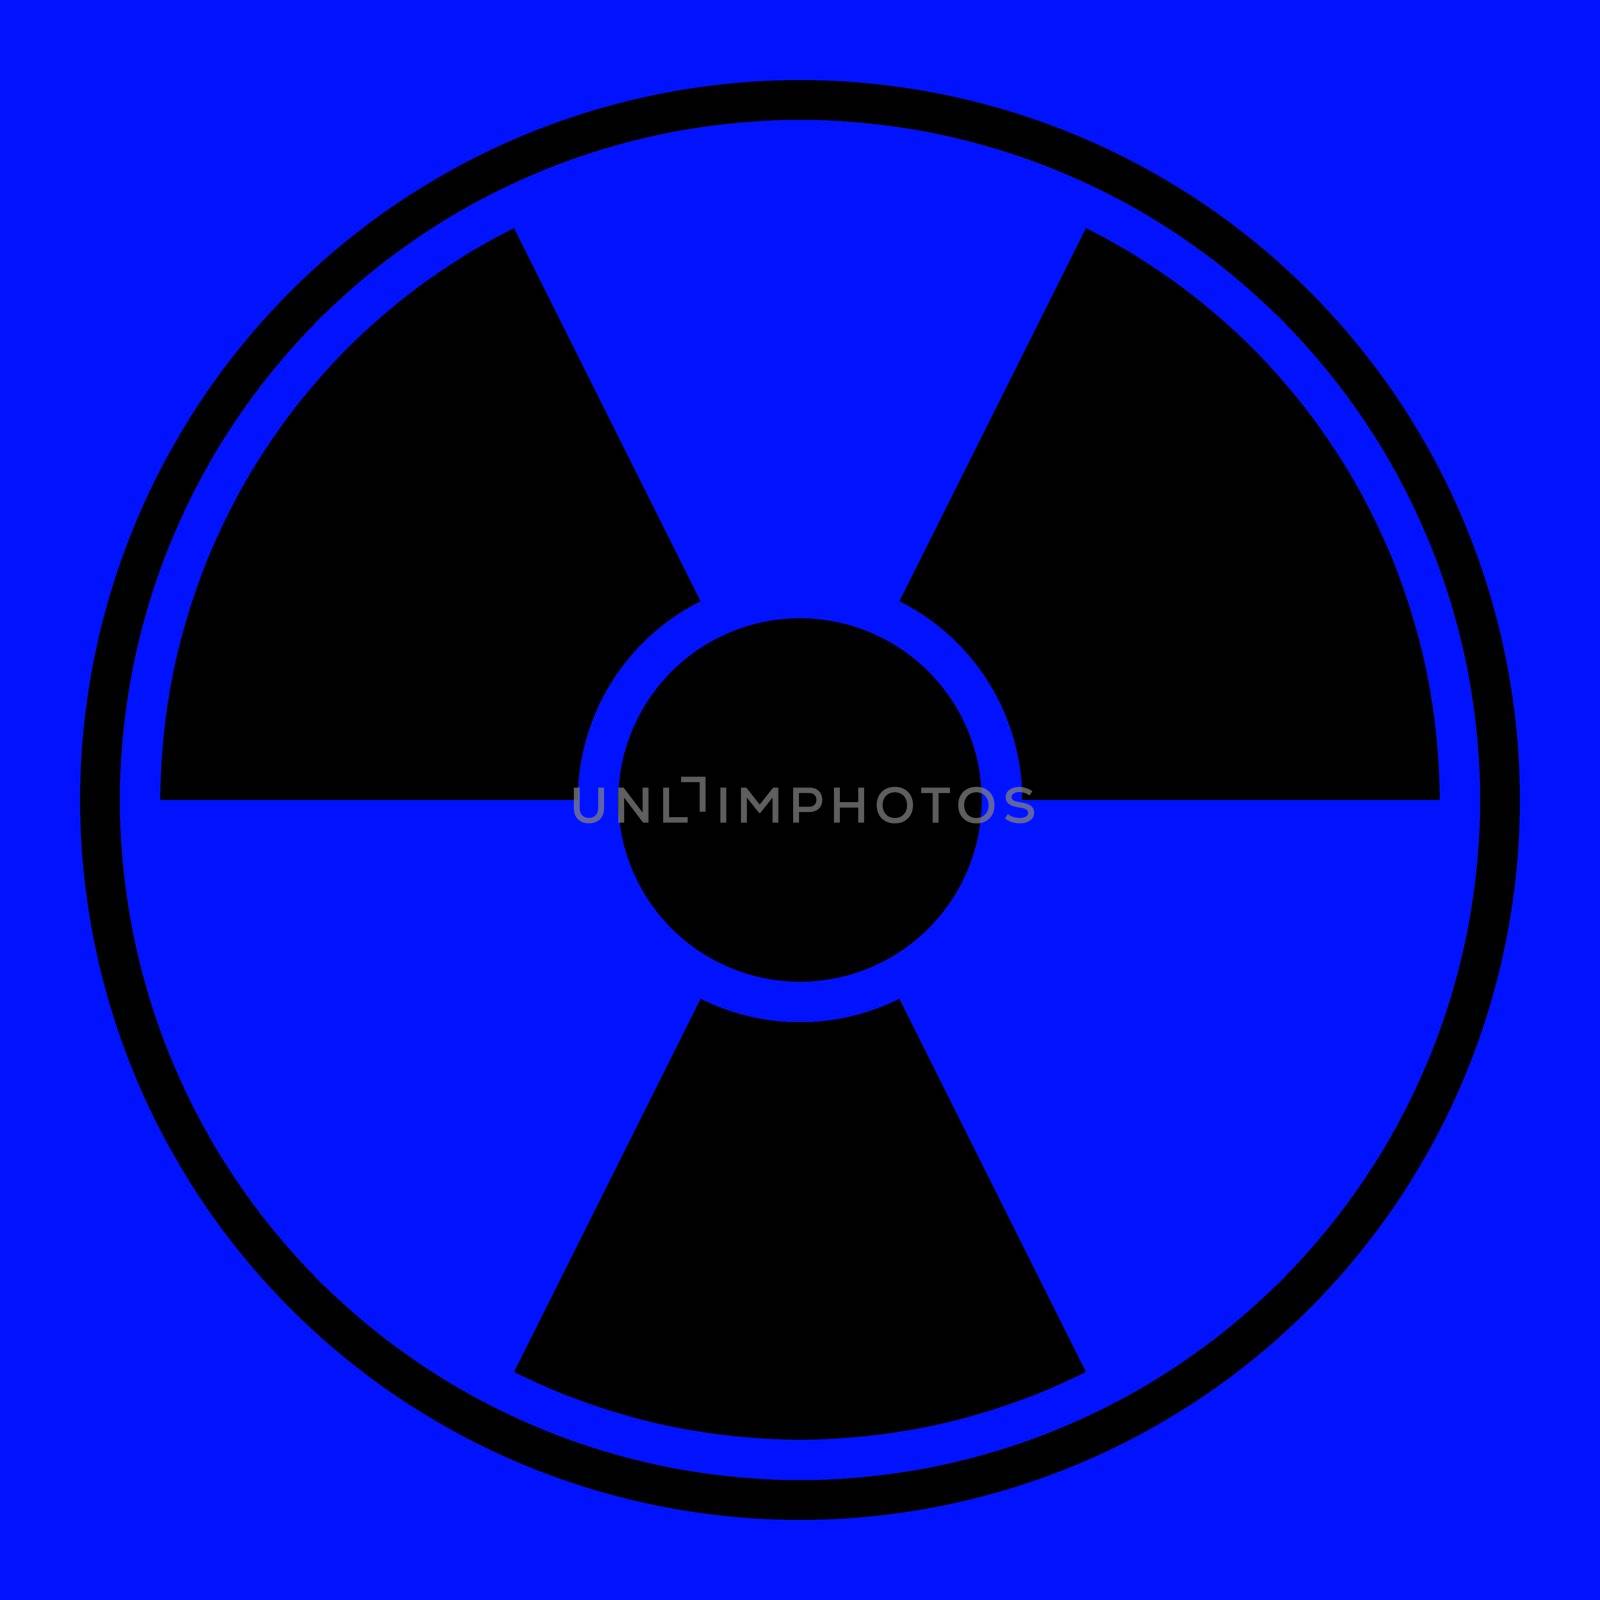 Round radiation warning sign on blue background